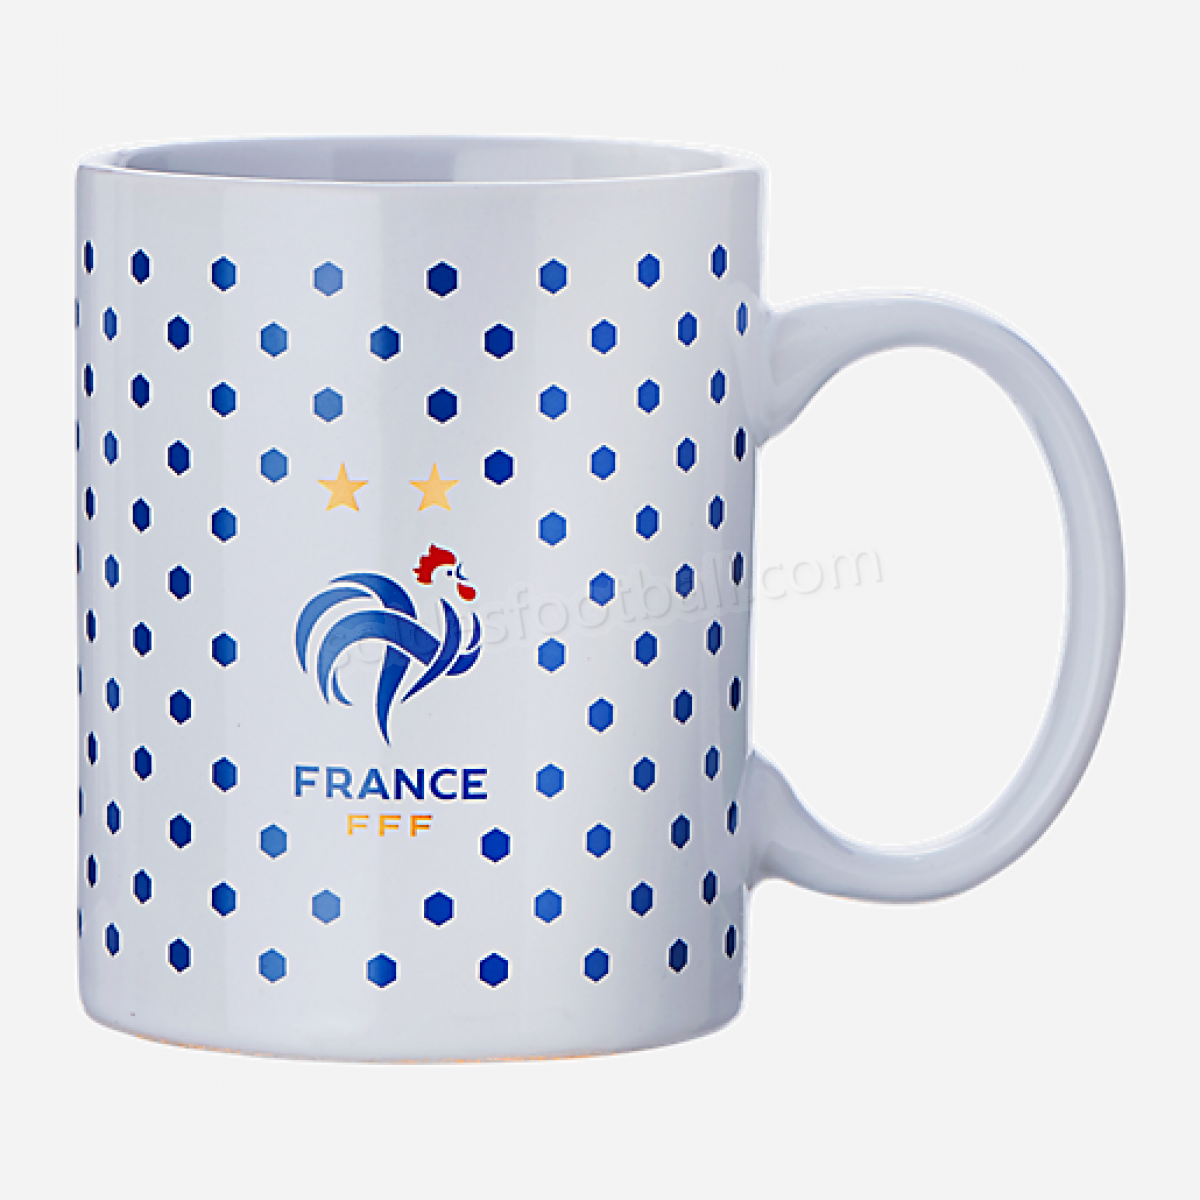 Mug FFF 19-FRANCE en solde - Mug FFF 19-FRANCE en solde